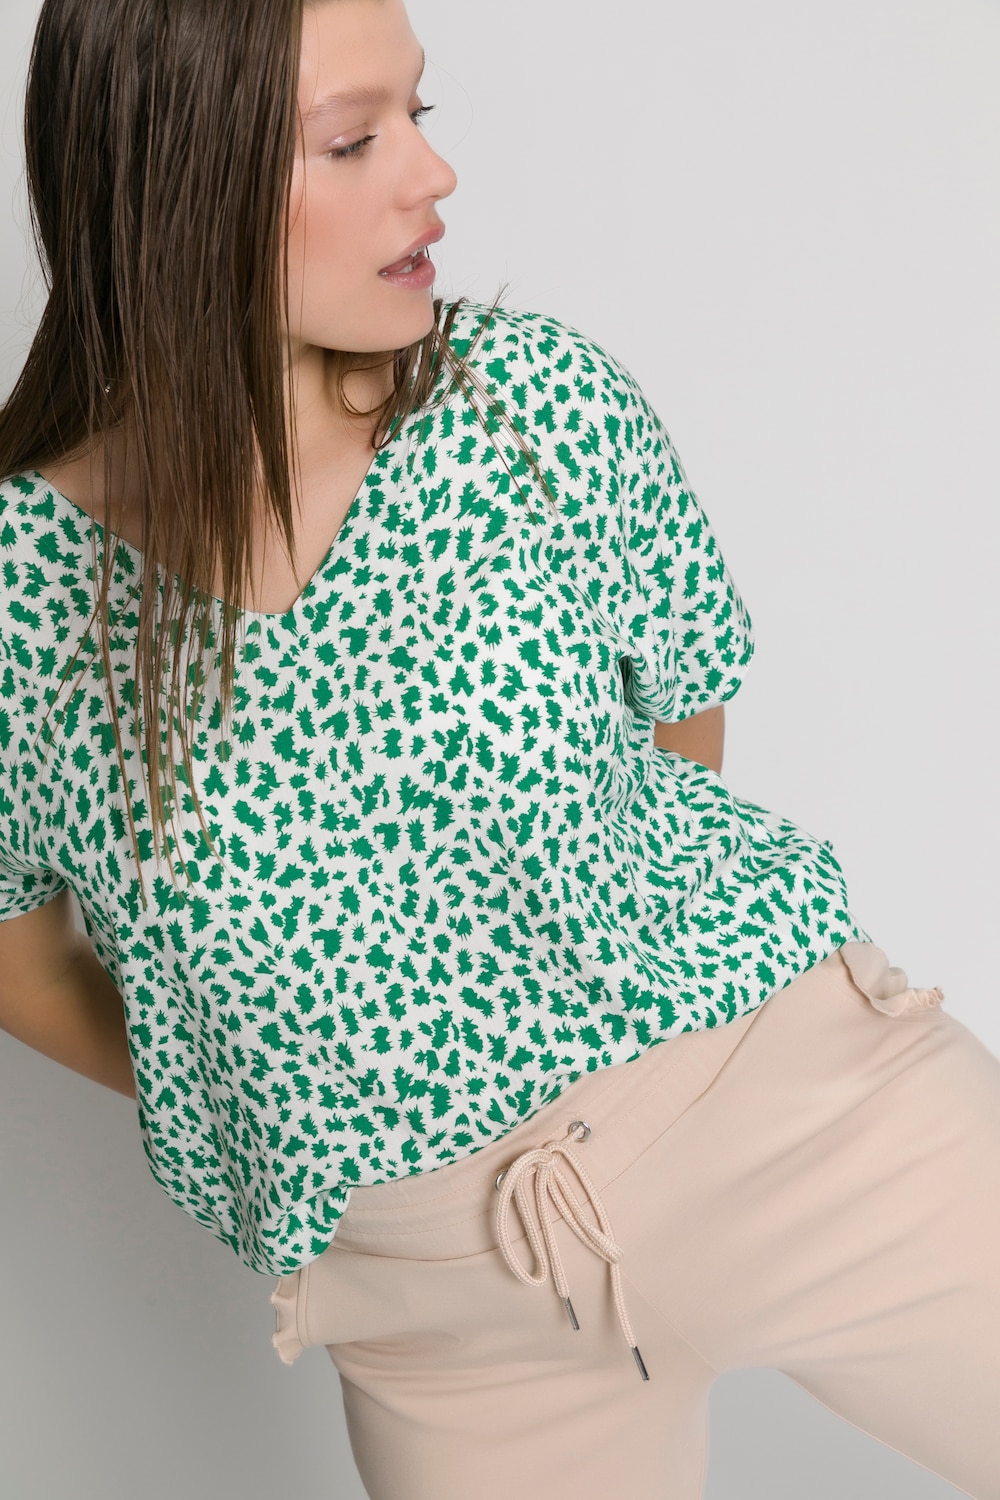 Grote Maten blouseshirt, Dames, groen, Maat: 42/44, Viscose, Studio Untold